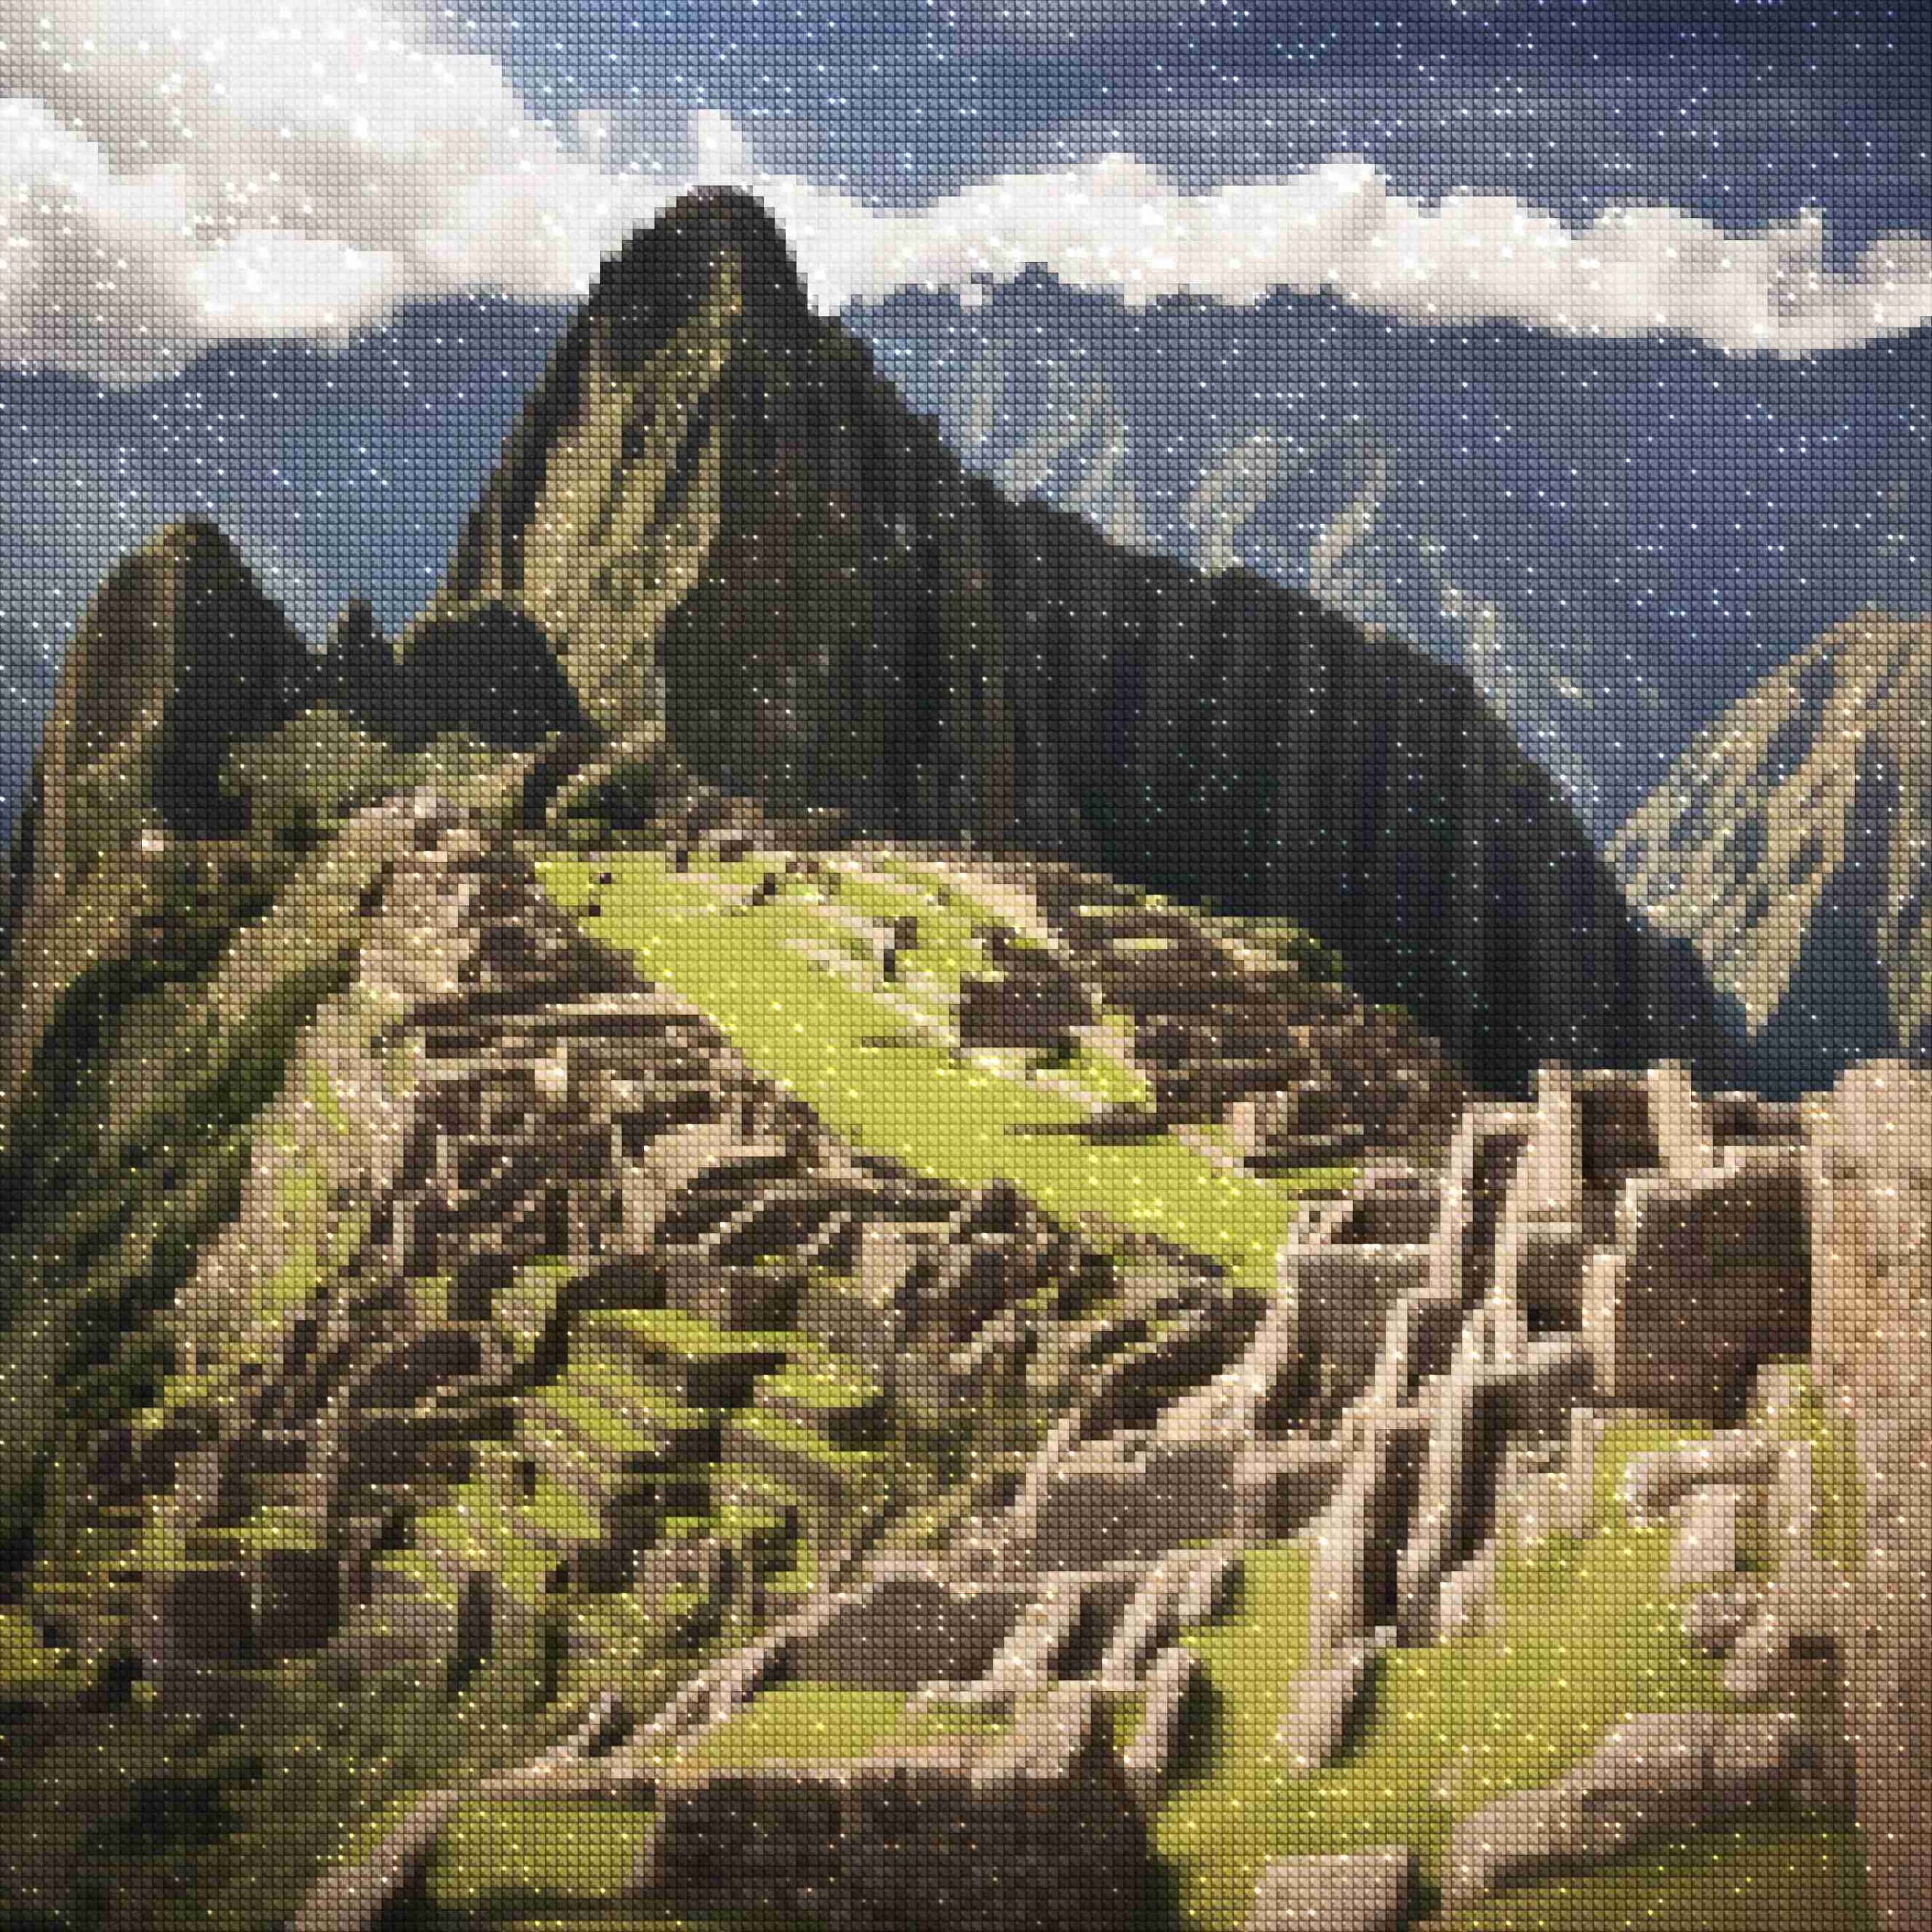 diamantes-mago-kits-de-pintura-de-diamantes-Viajes-Perú-Ruinas-Incas-Reverencia-diamantes.jpg